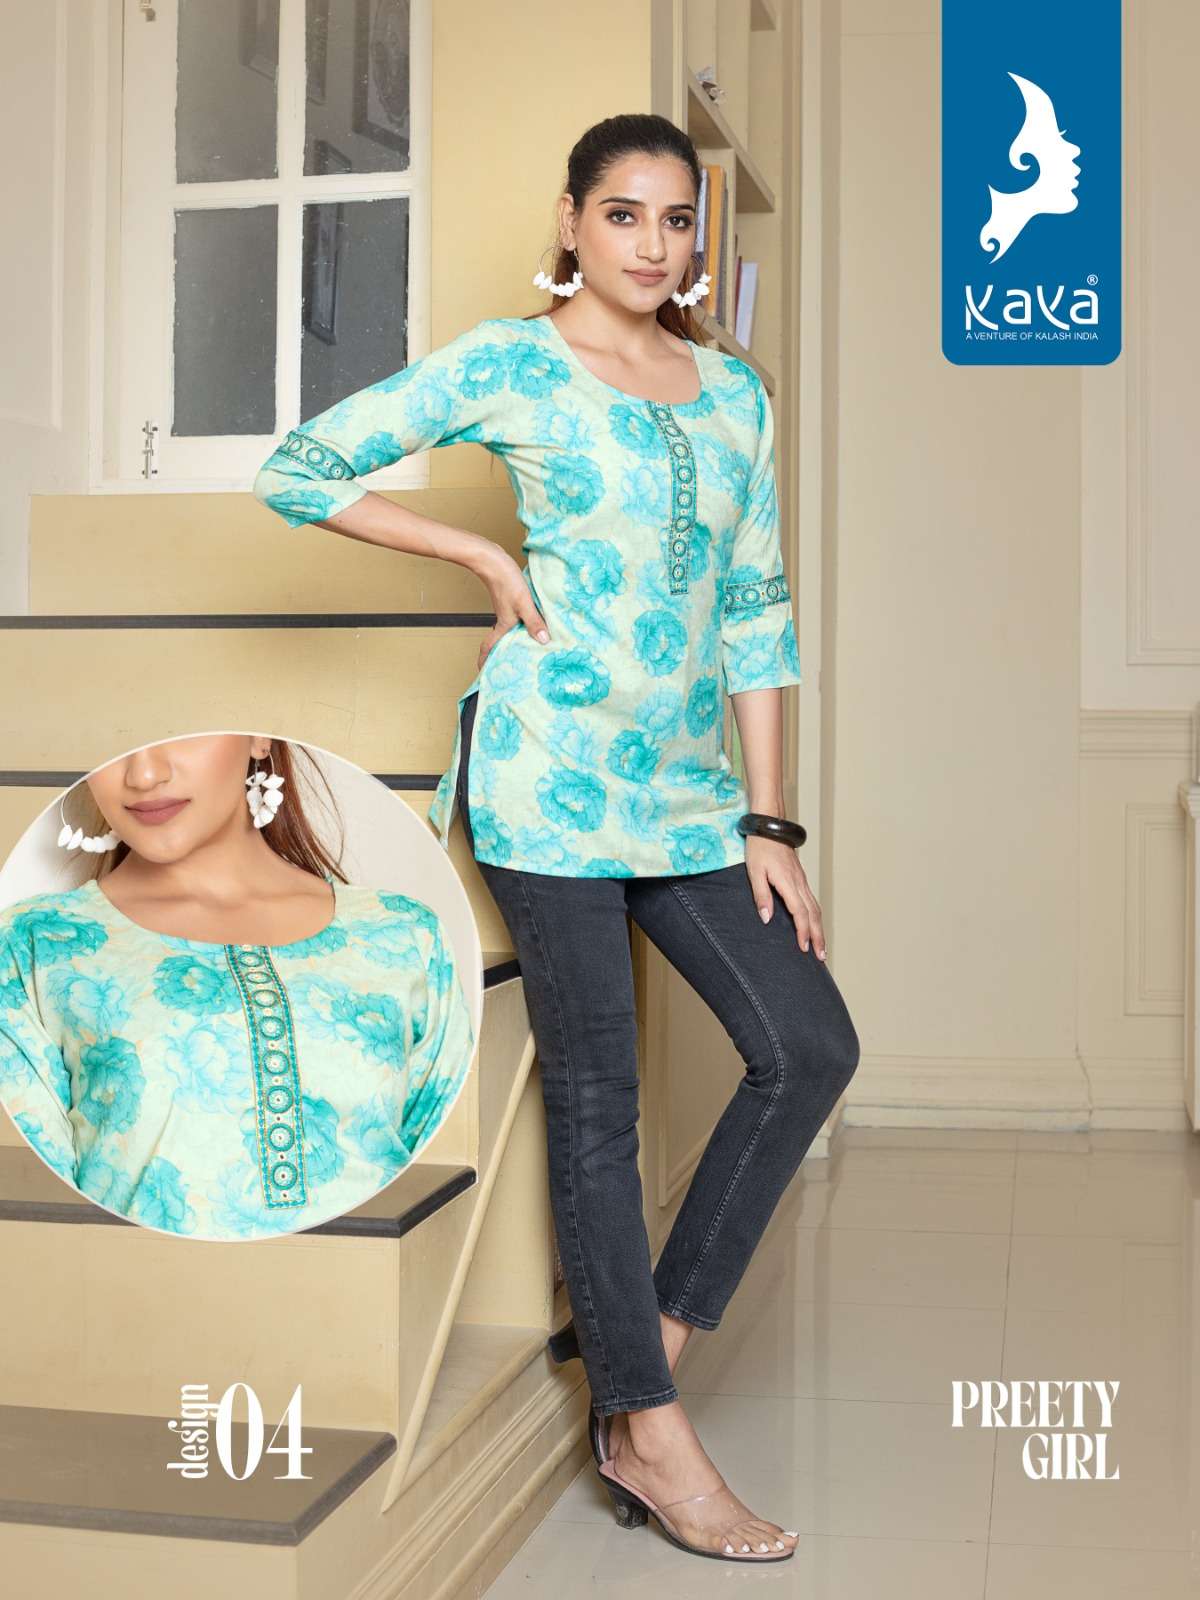 kaya preety girl 01-08 seriesrayon printed party wear short top wholesaler surat